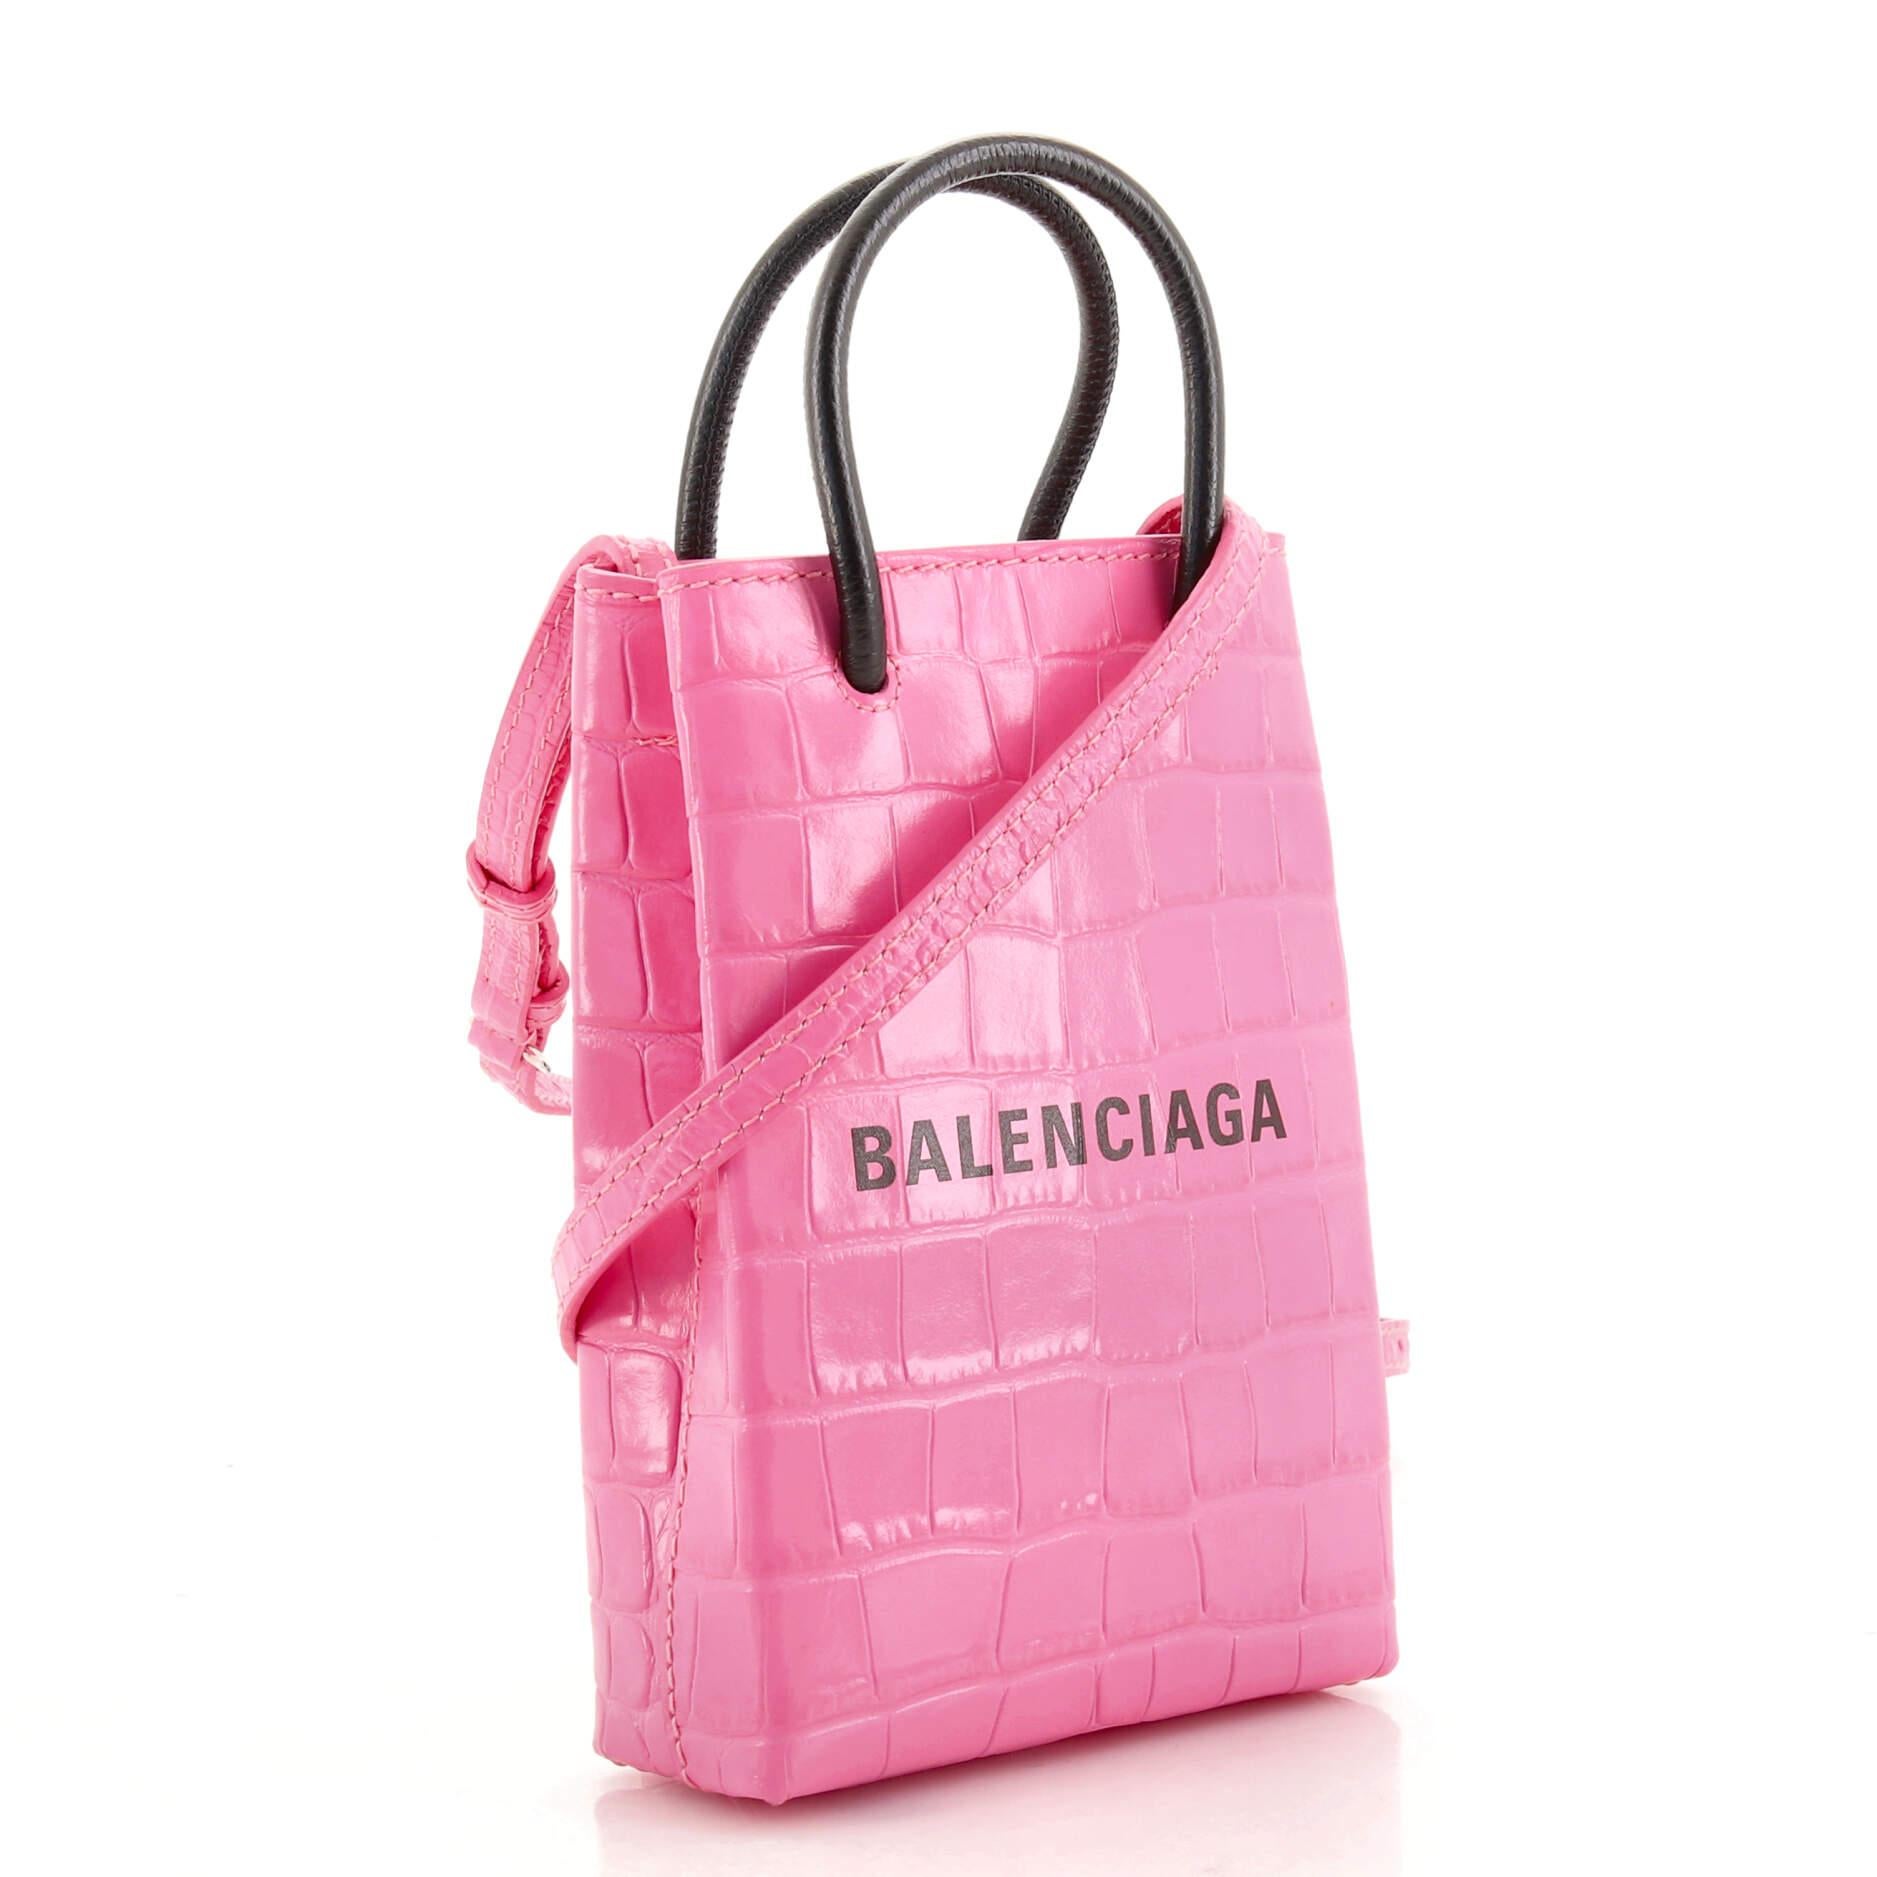 balenciaga bag pink sparkly